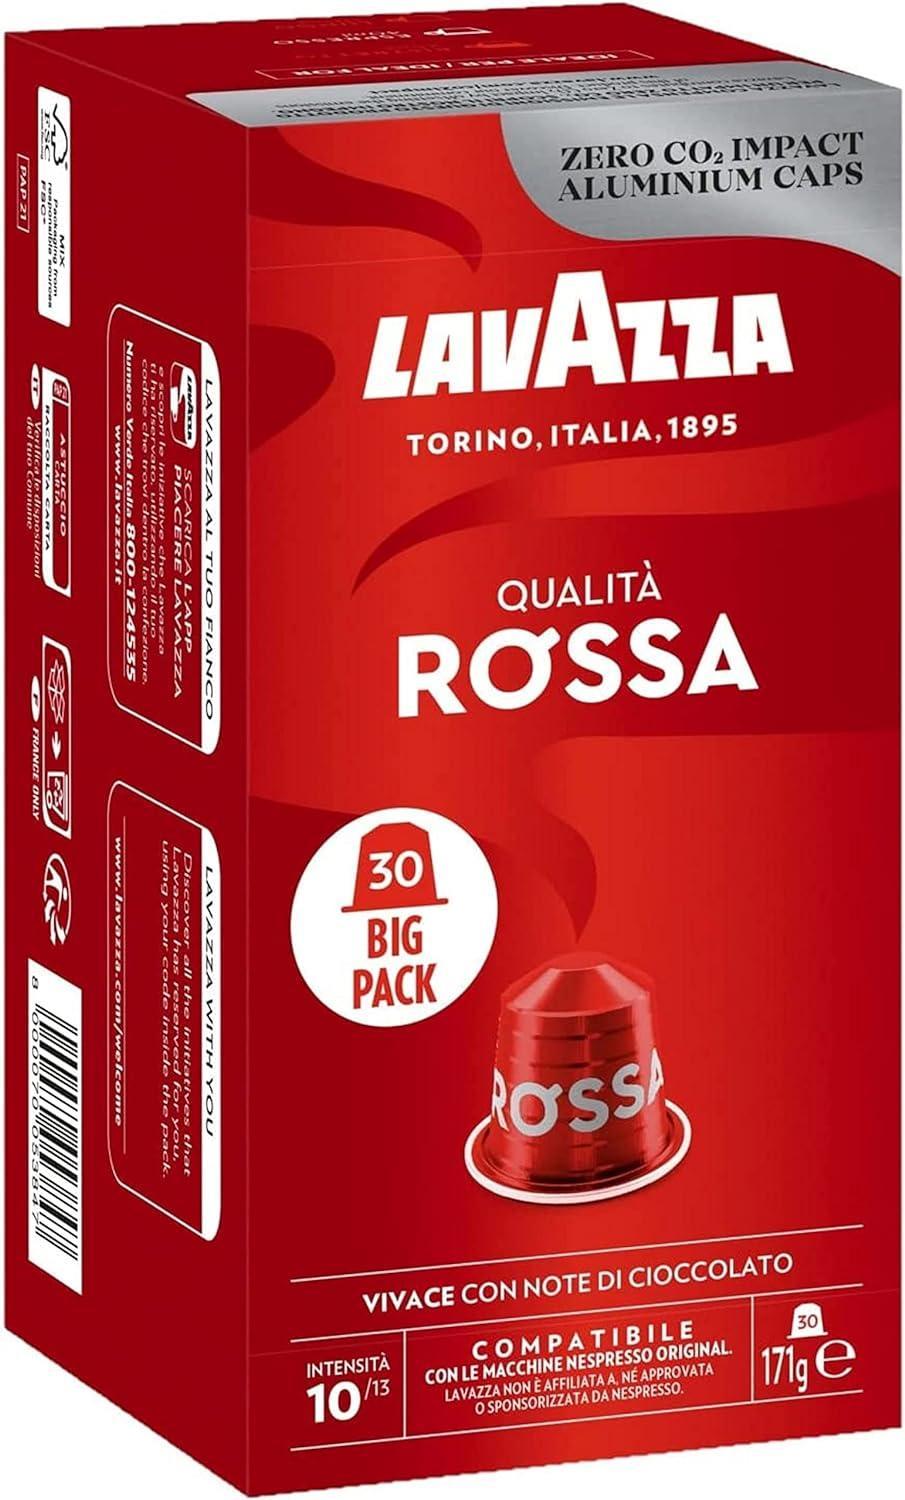 Lavazza Qualita Rossa Coffee Capsules - Compatible with Nespresso Machines - 30 Pods